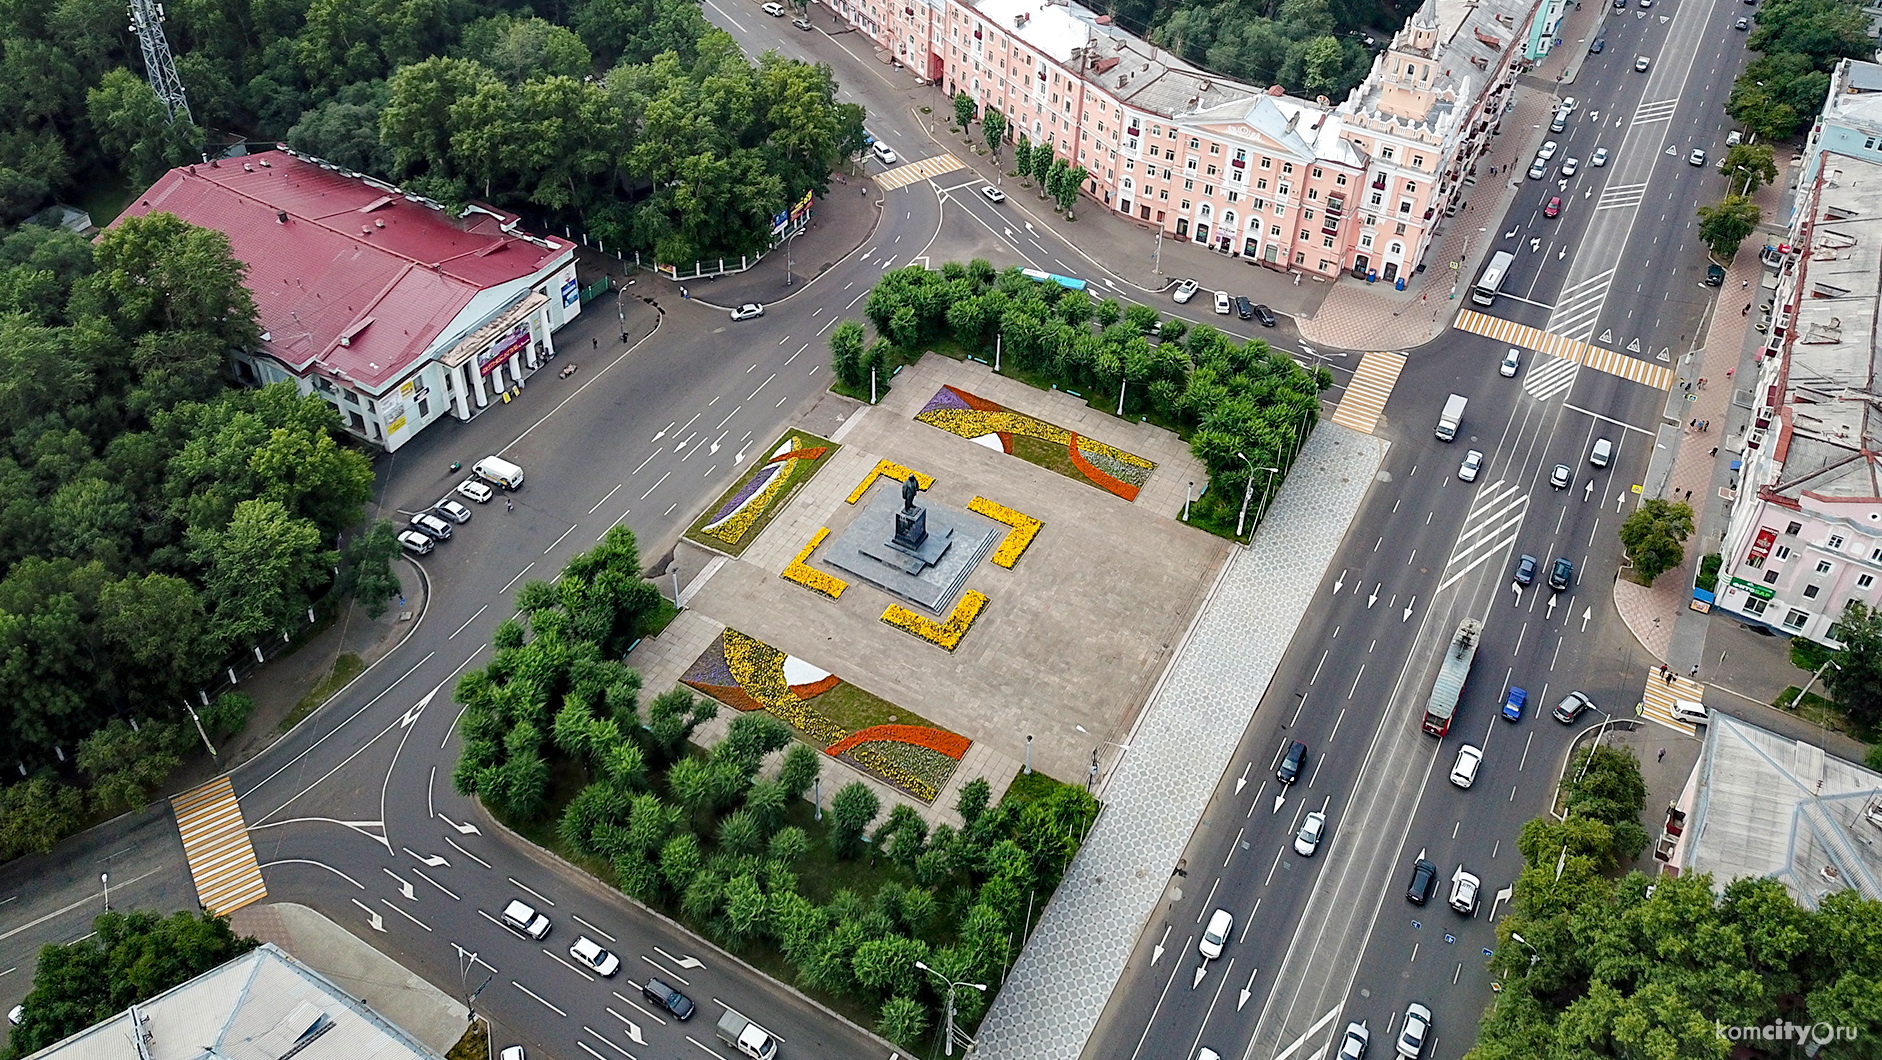 Площадь Ленина Комсомольска-на-Амуре победила в народном голосовании и будет реконструирована в 2019-м году